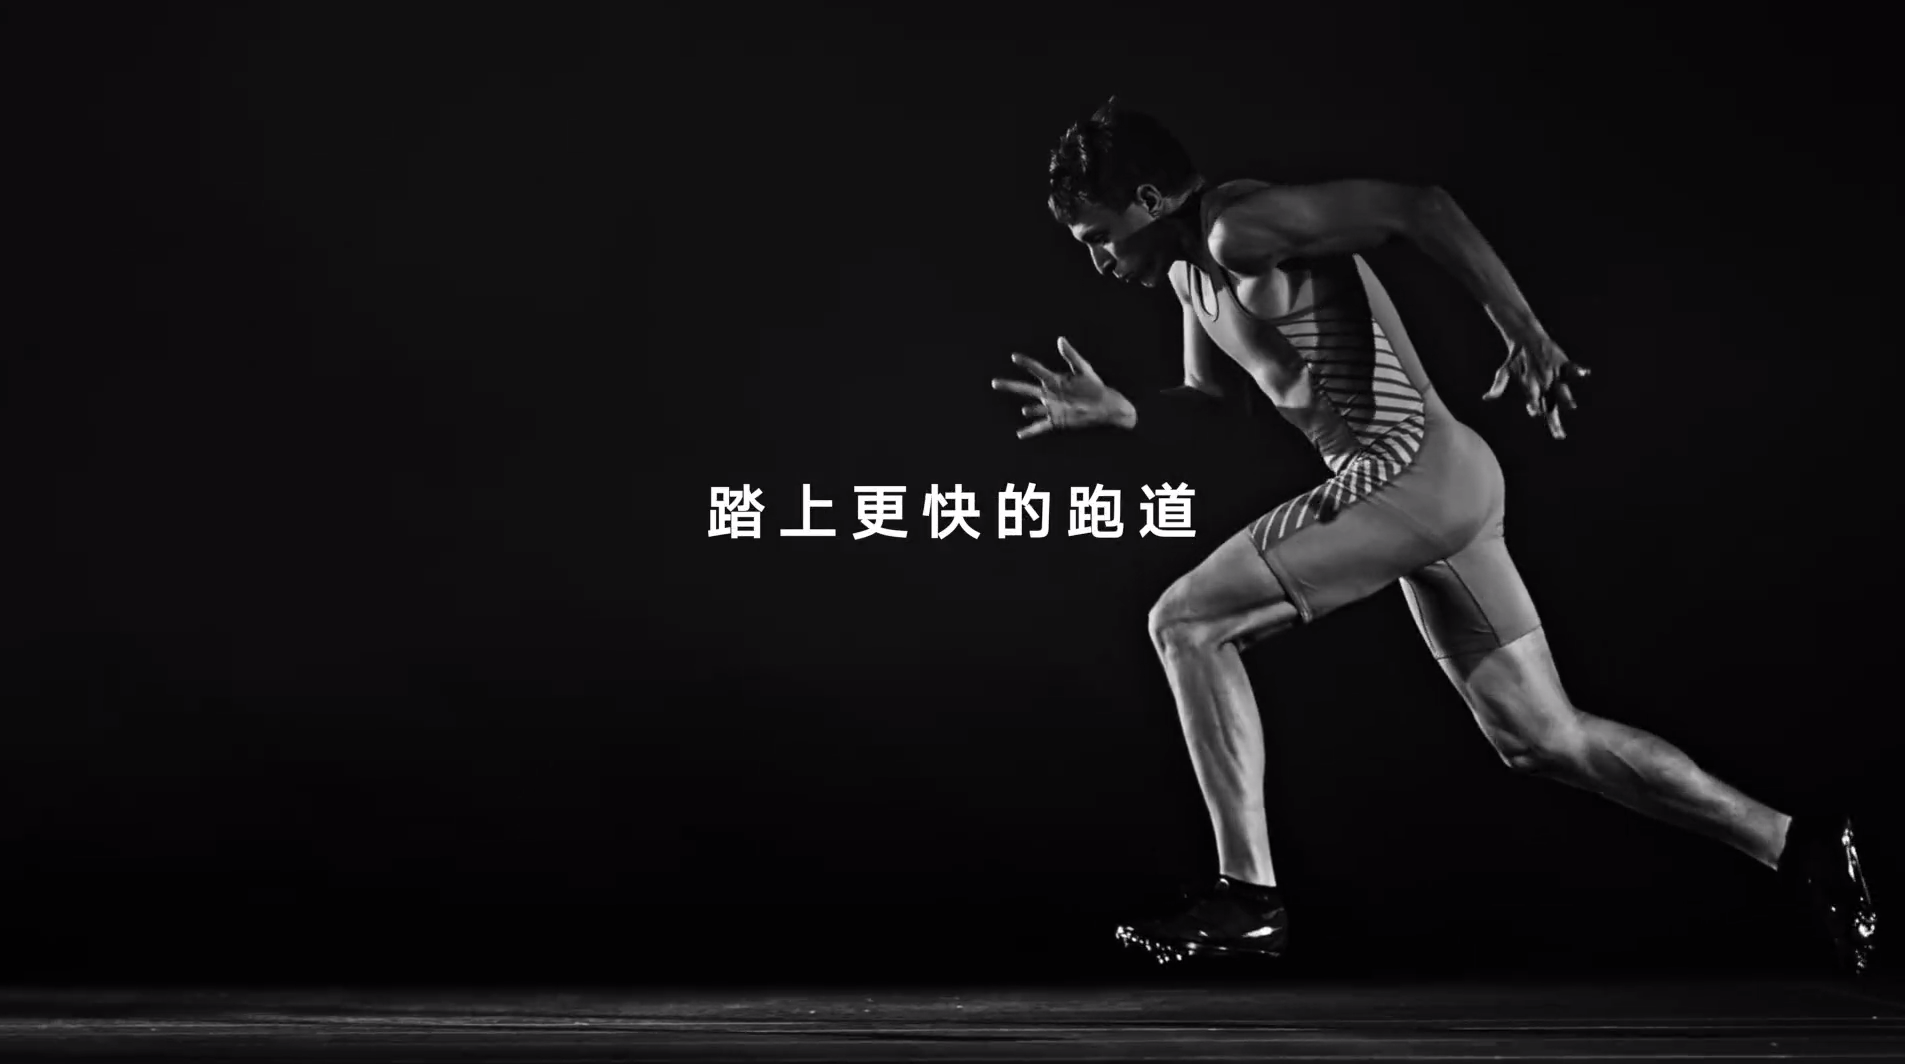 网易有道奥运短片《砺炼是金》：踏实走好人生每一步